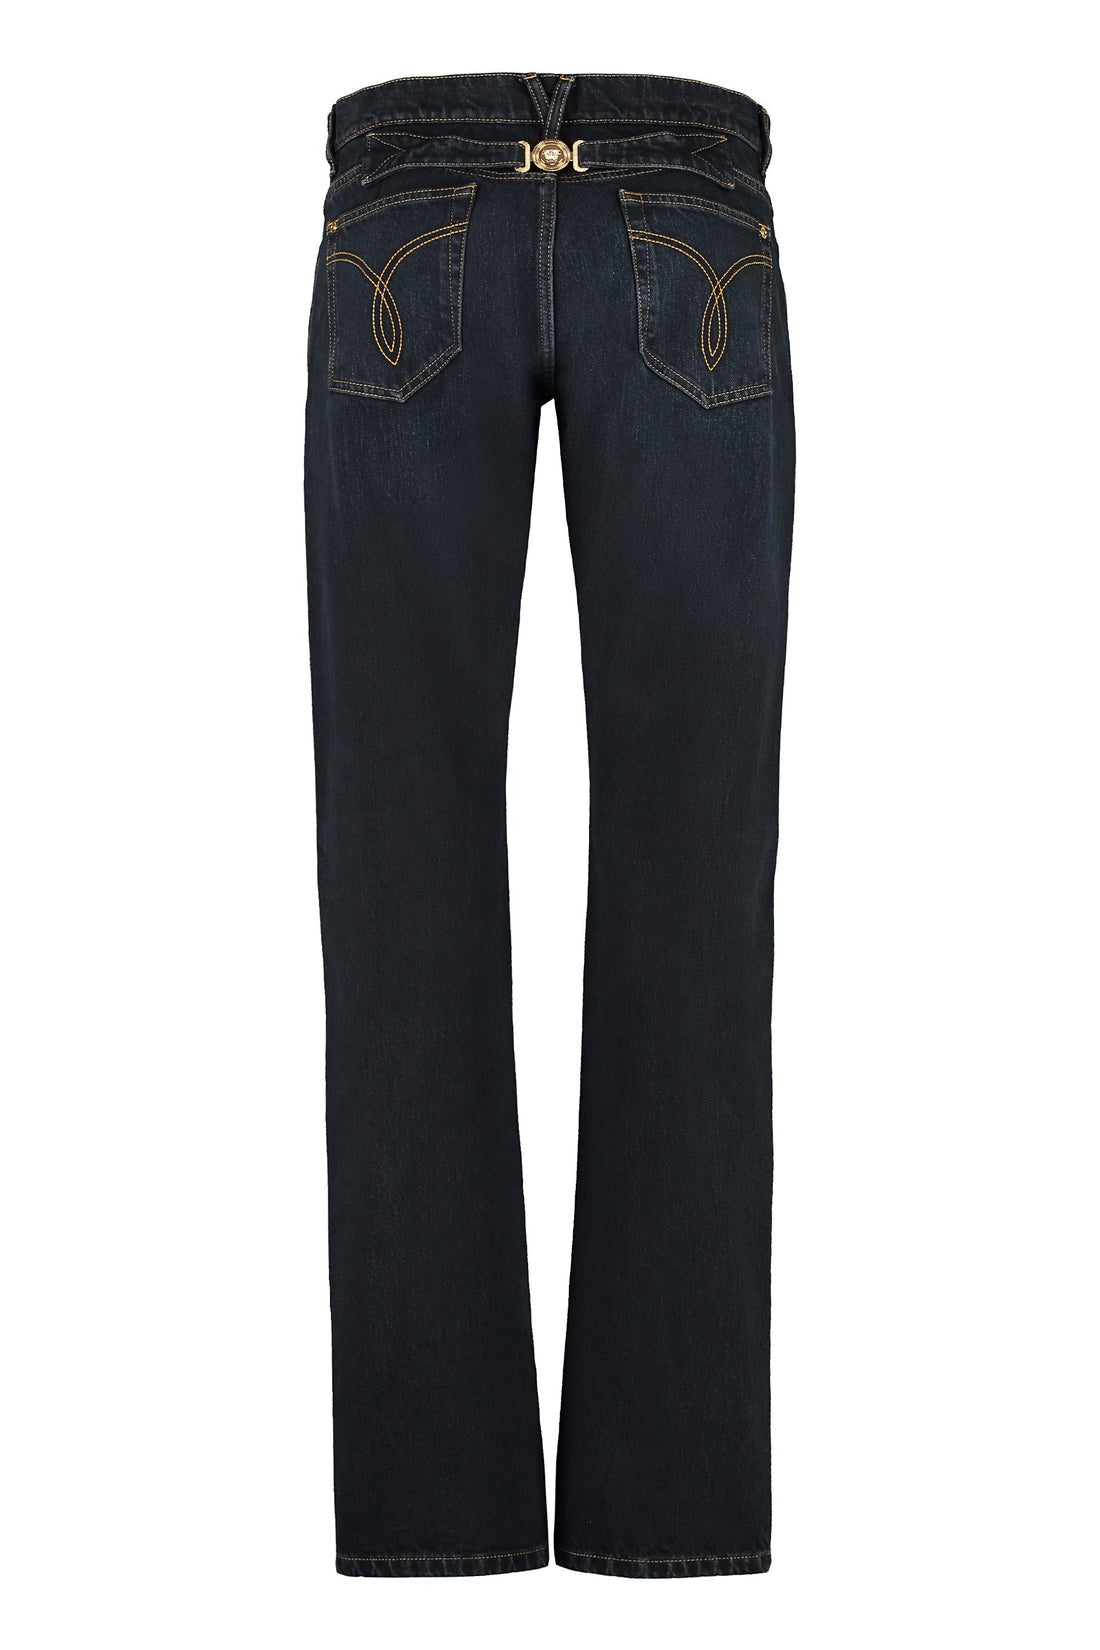 Versace-OUTLET-SALE-5-pocket straight-leg jeans-ARCHIVIST